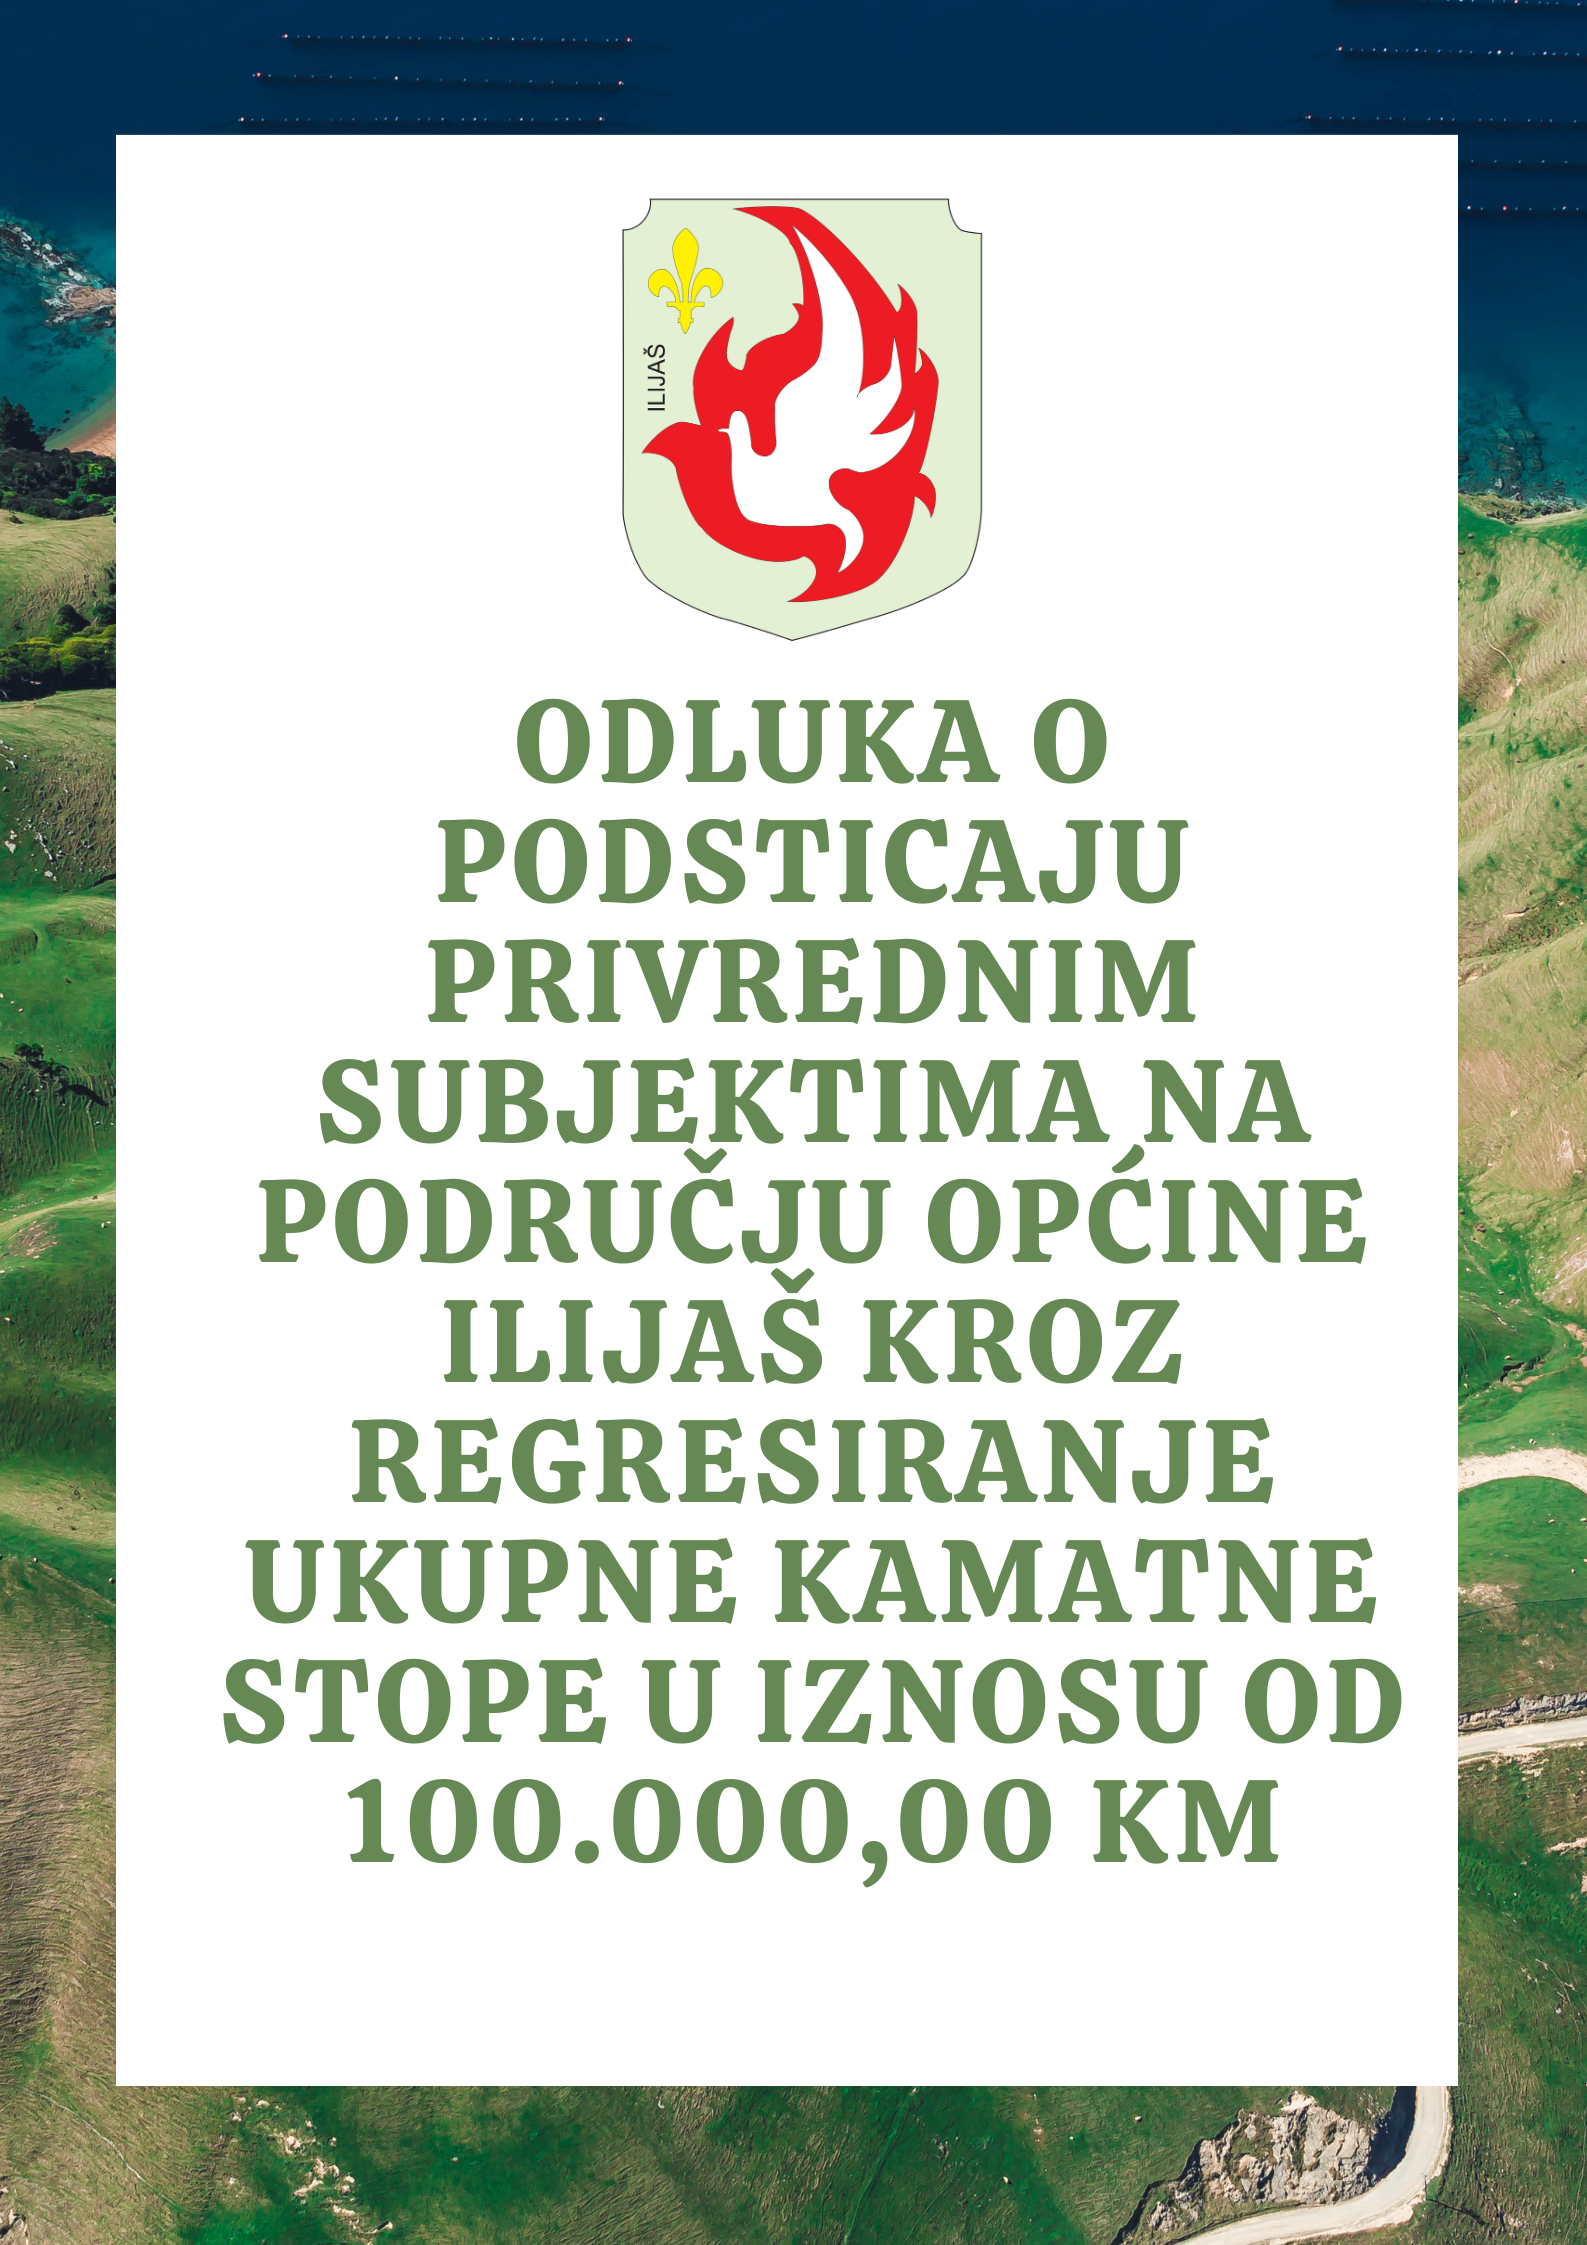 Odluka o podsticaju privrednim subjektima na području općine Ilijaš kroz regresiranje ukupne kamatne stope u iznosu od 100.00000 KM